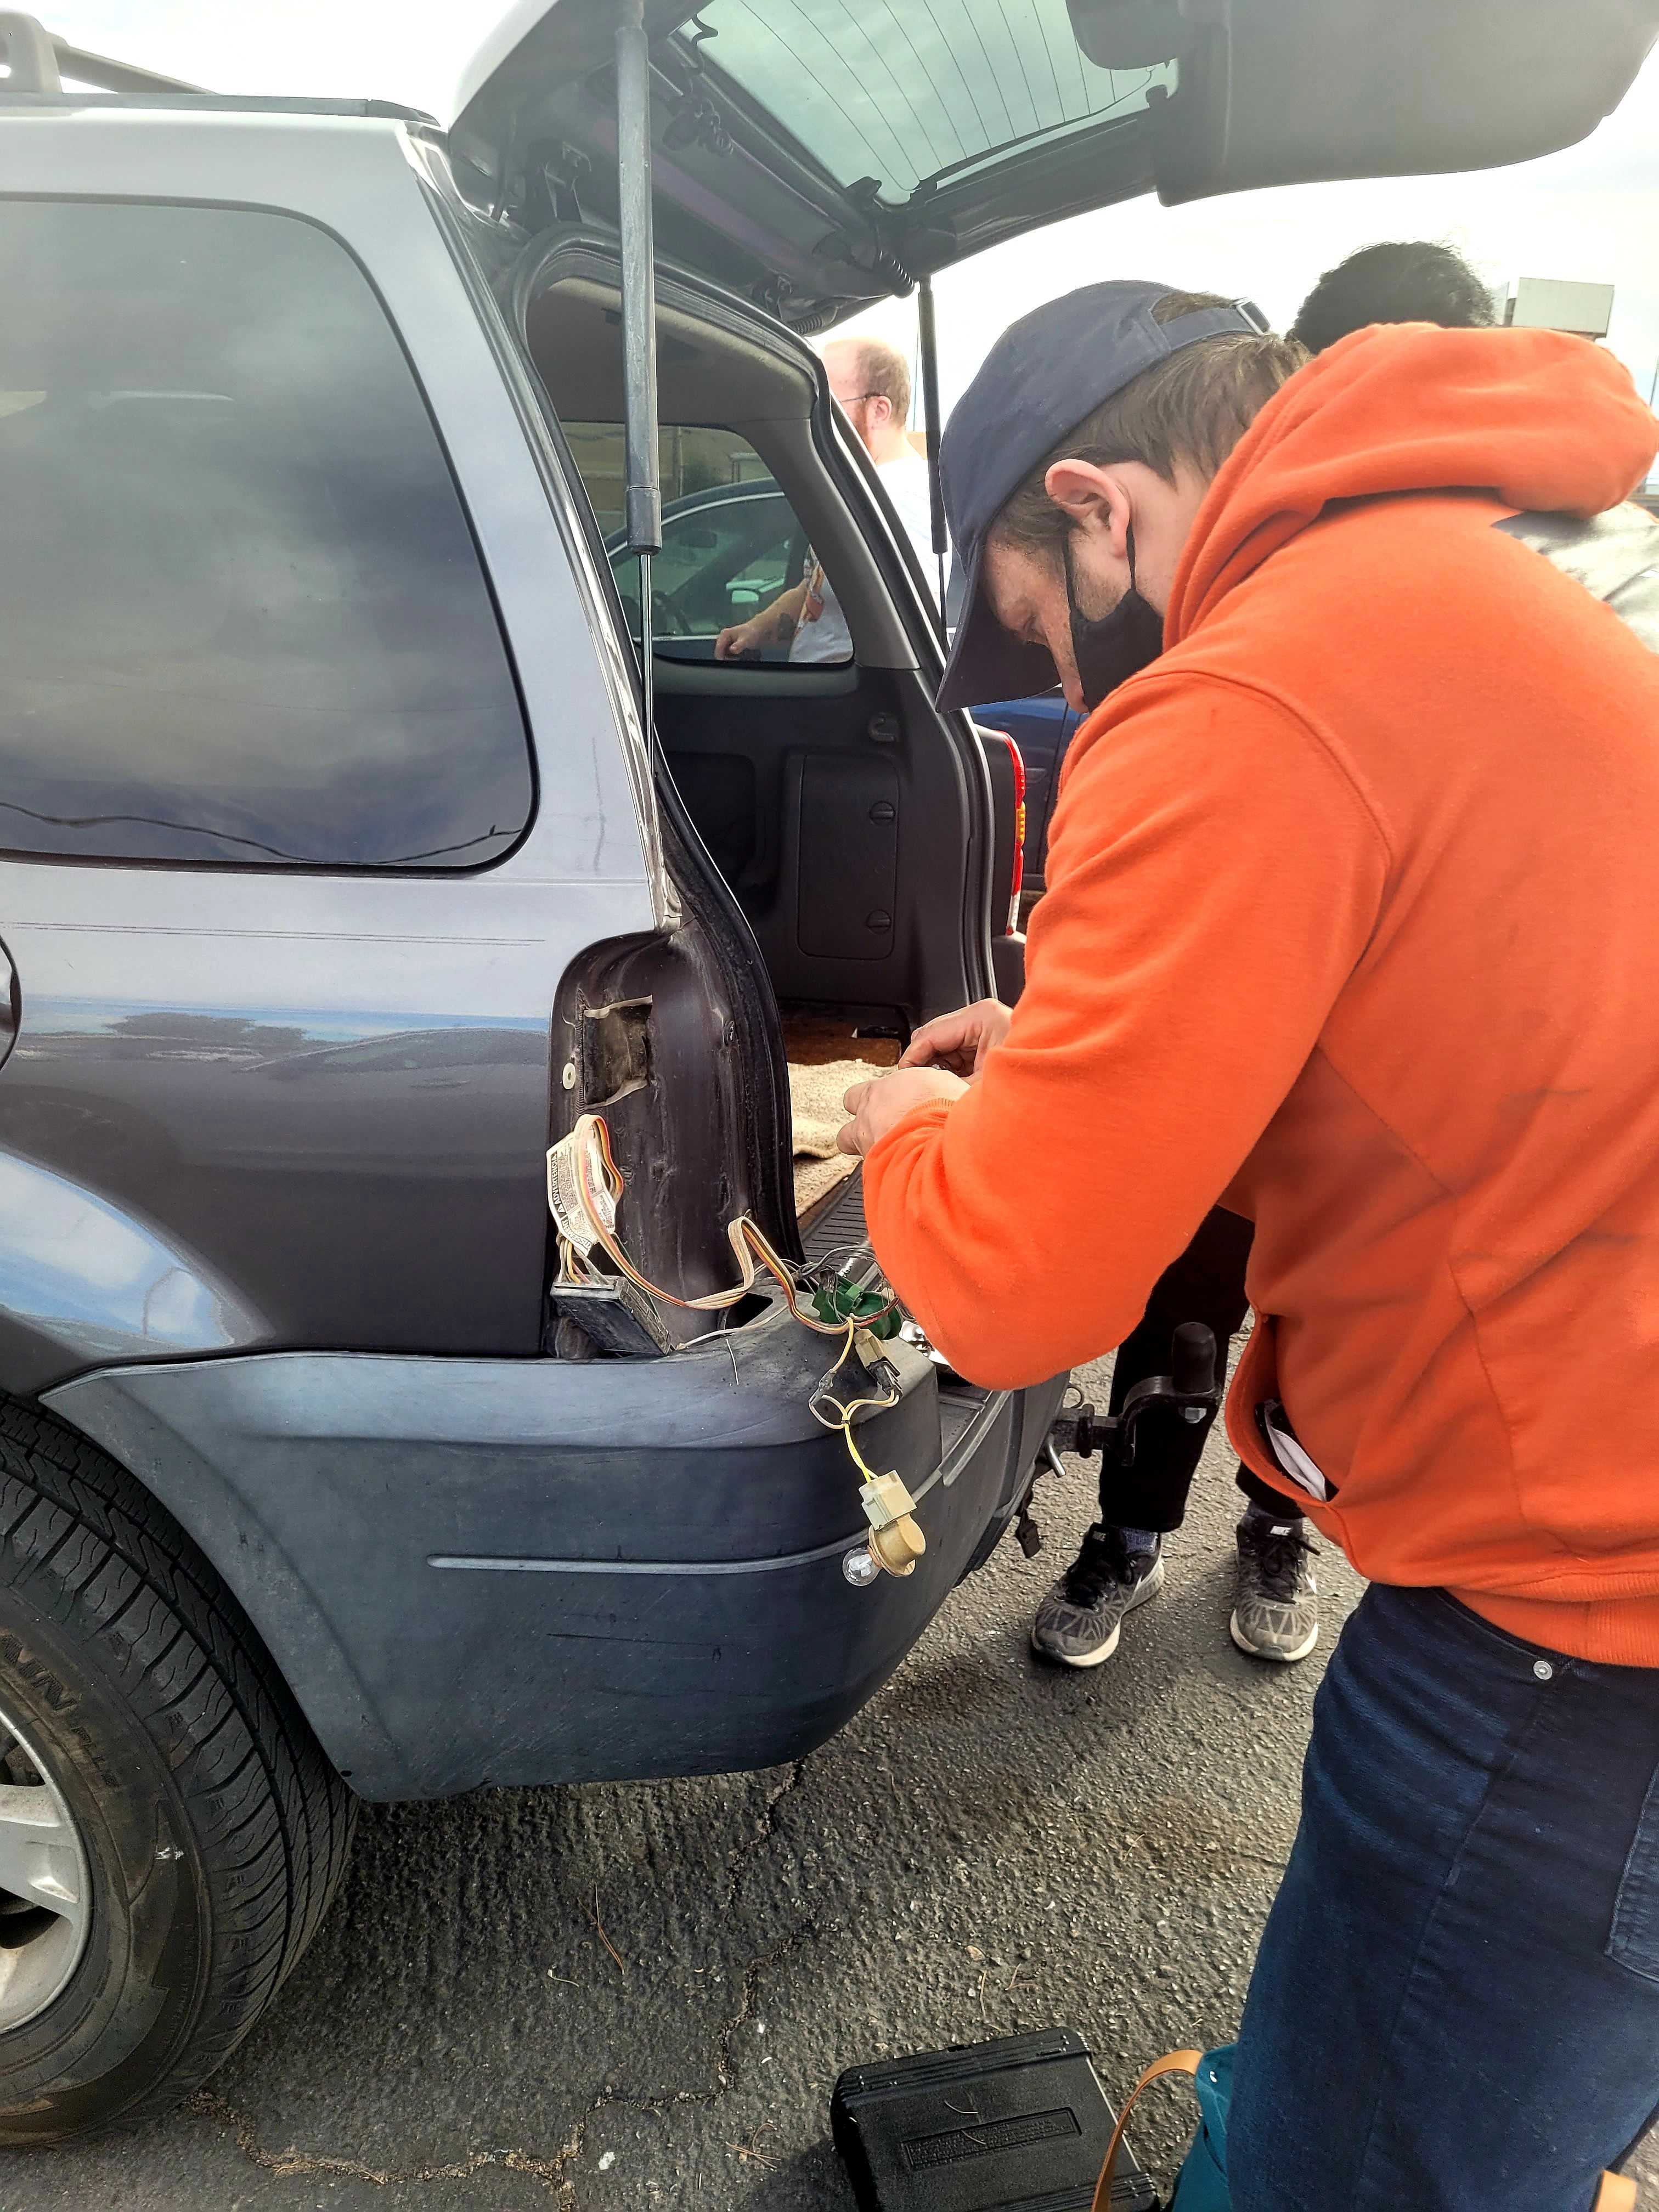 LVDSA volunteer repairing brake lights